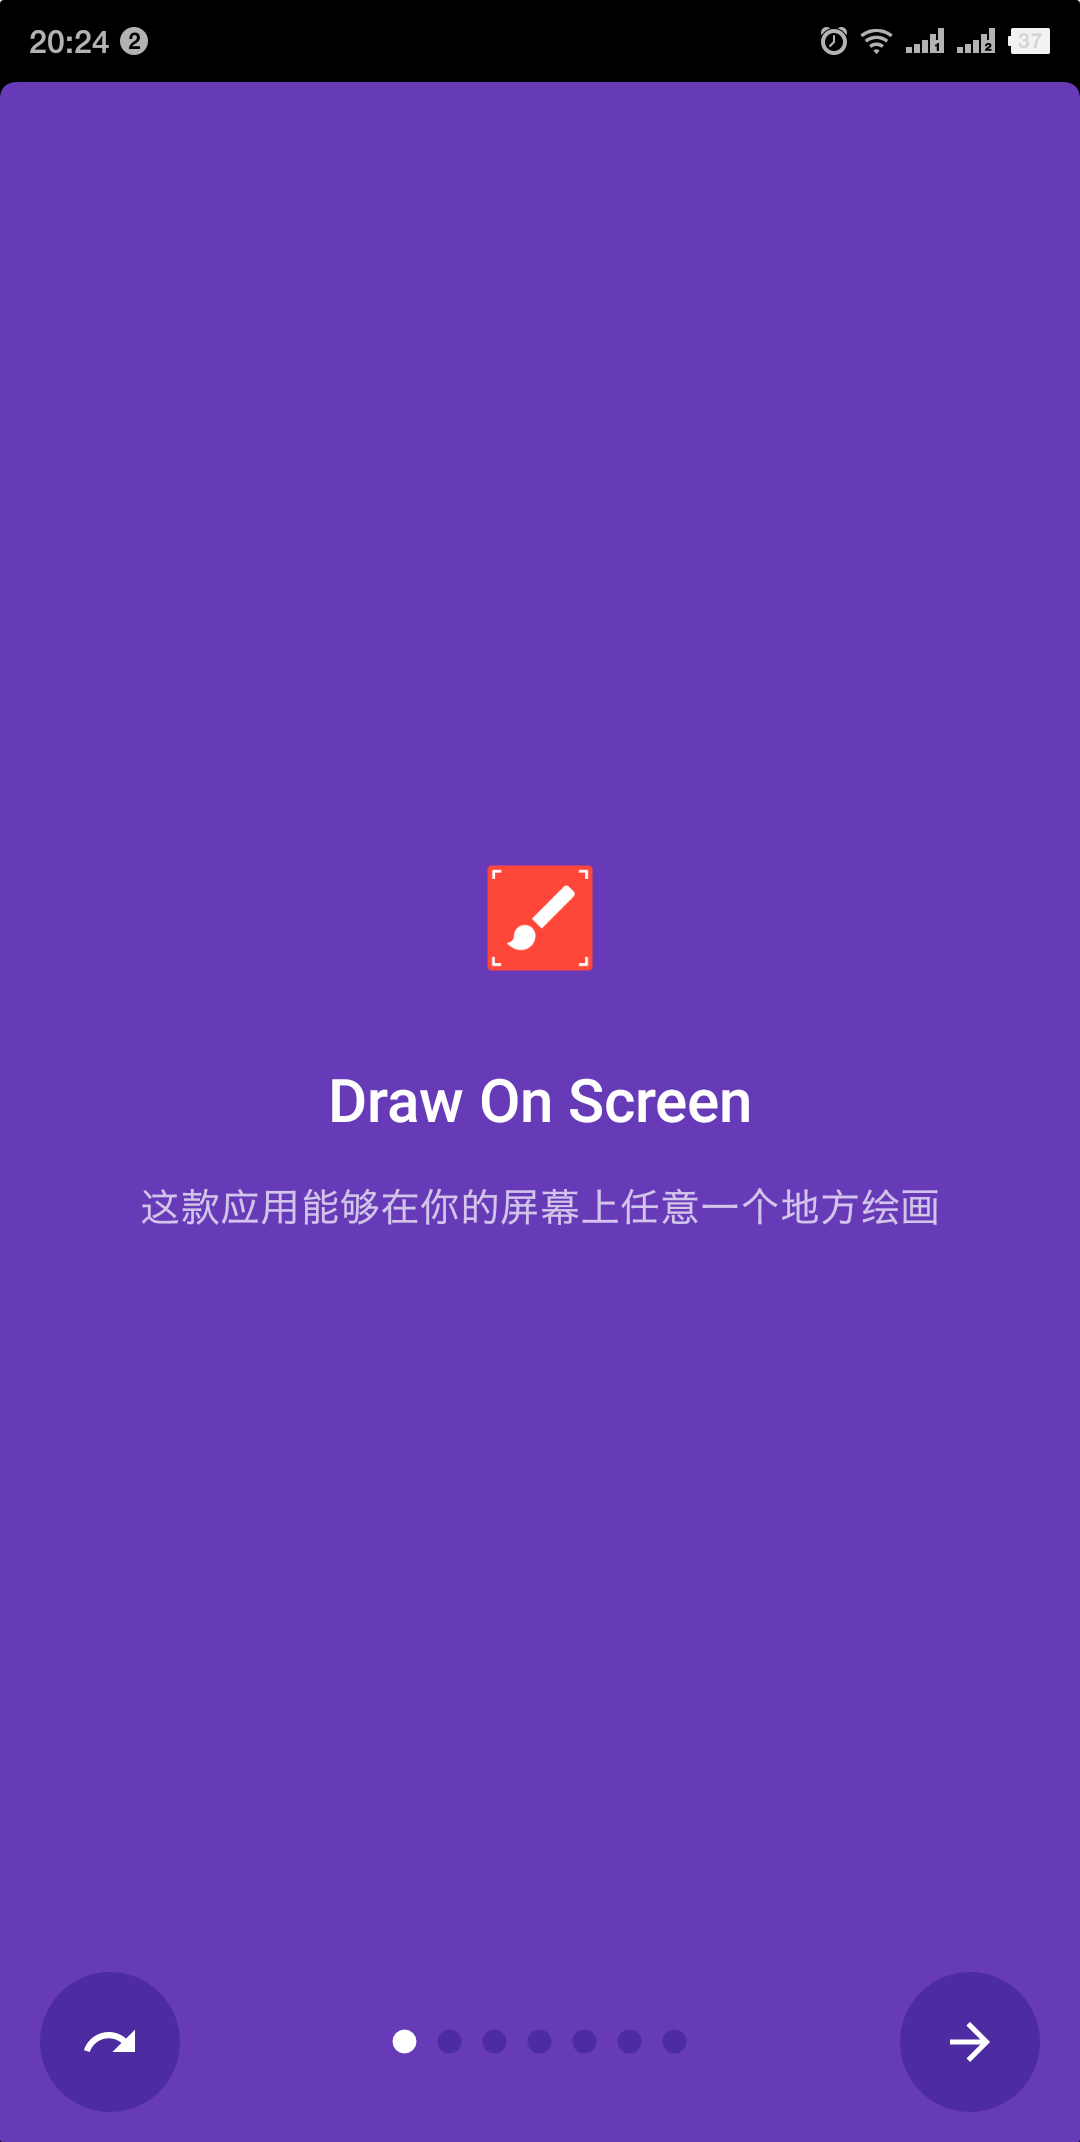 Draw On Screen】(屏幕绘图) v1.4.5 汉化版-微分享自媒体驿站